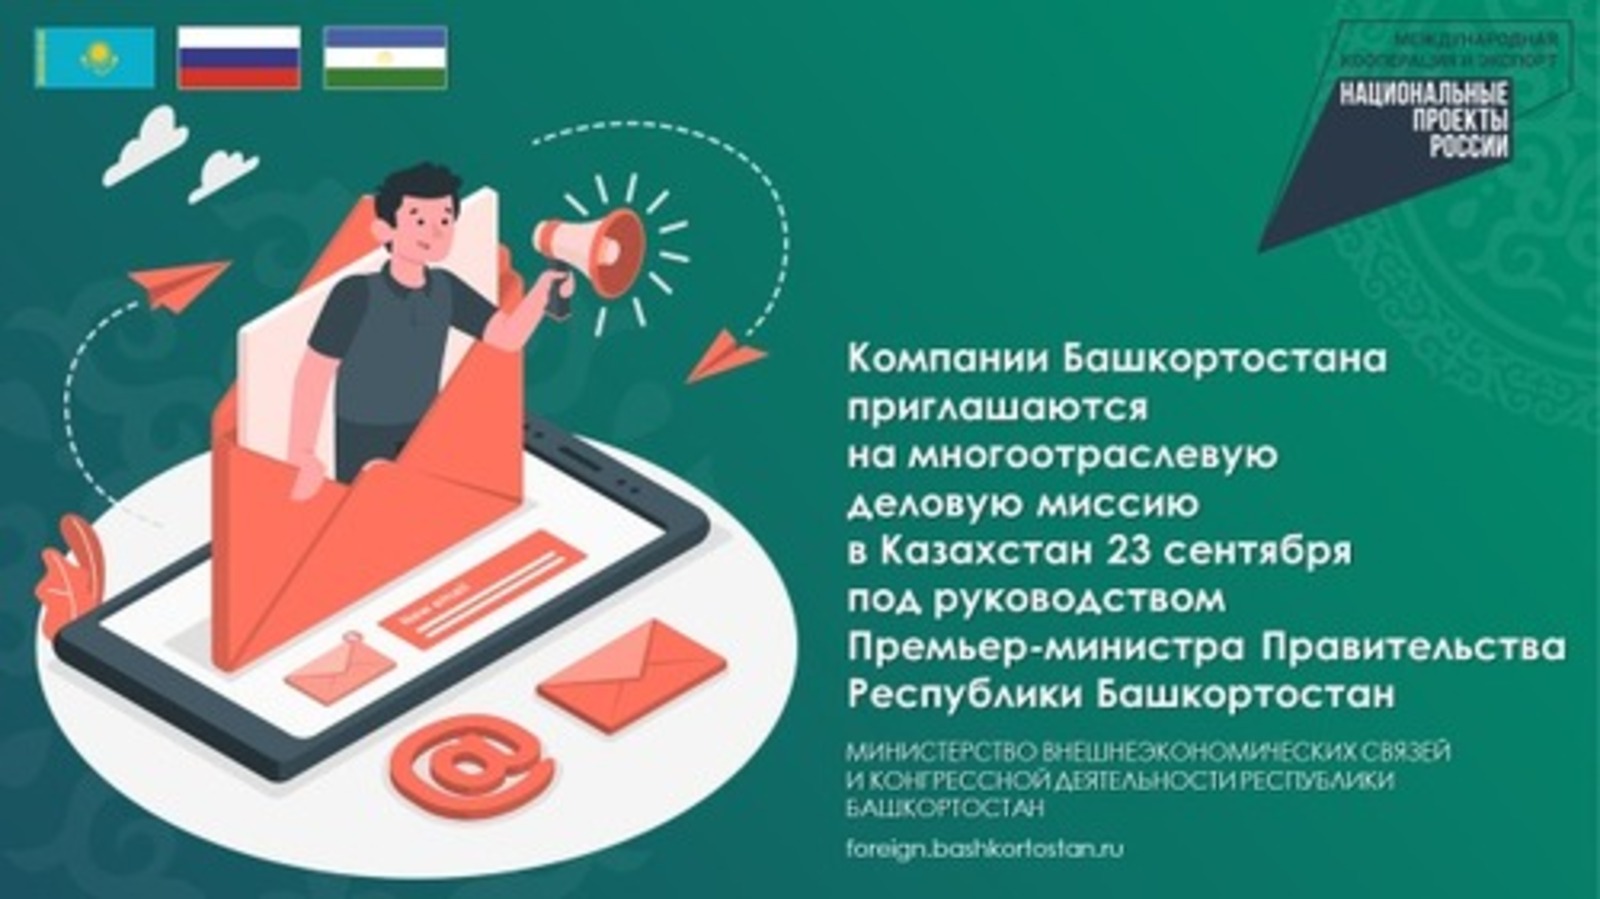 Предприятия Башкортостана приглашаются на бизнес-миссию в Казахстан